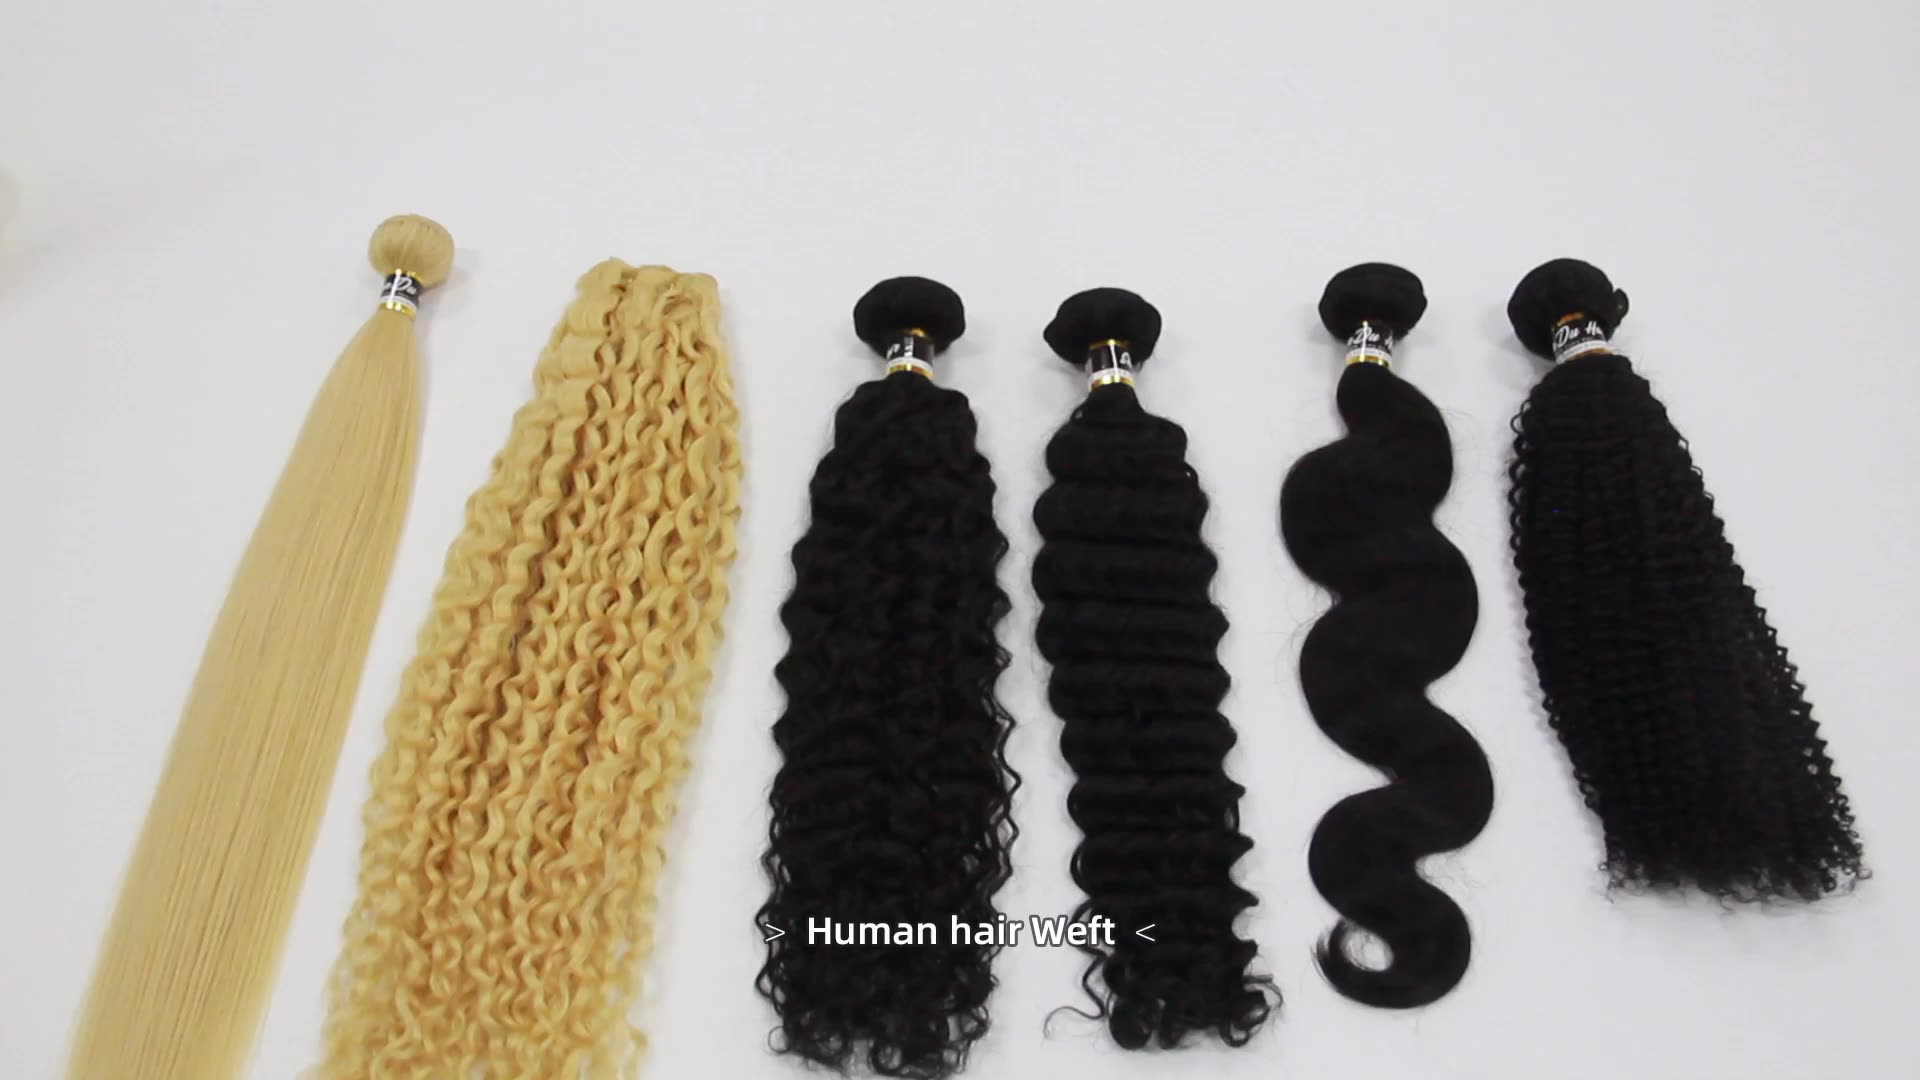 Bulto de cabello humano barato Extensión Cabello Camino crudo Indio saludable Brasil Brasileño Virgin Virgin Real 100% Remy Hair Bundles Vendor1